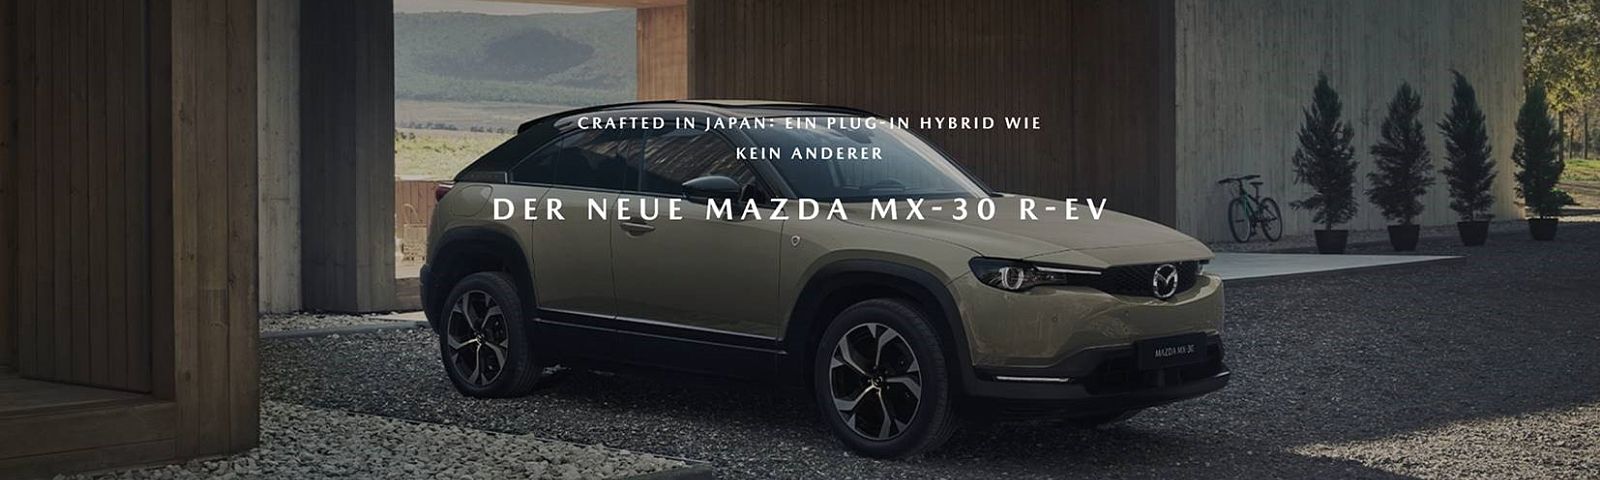 Der neue Mazda MX-30 R-EV